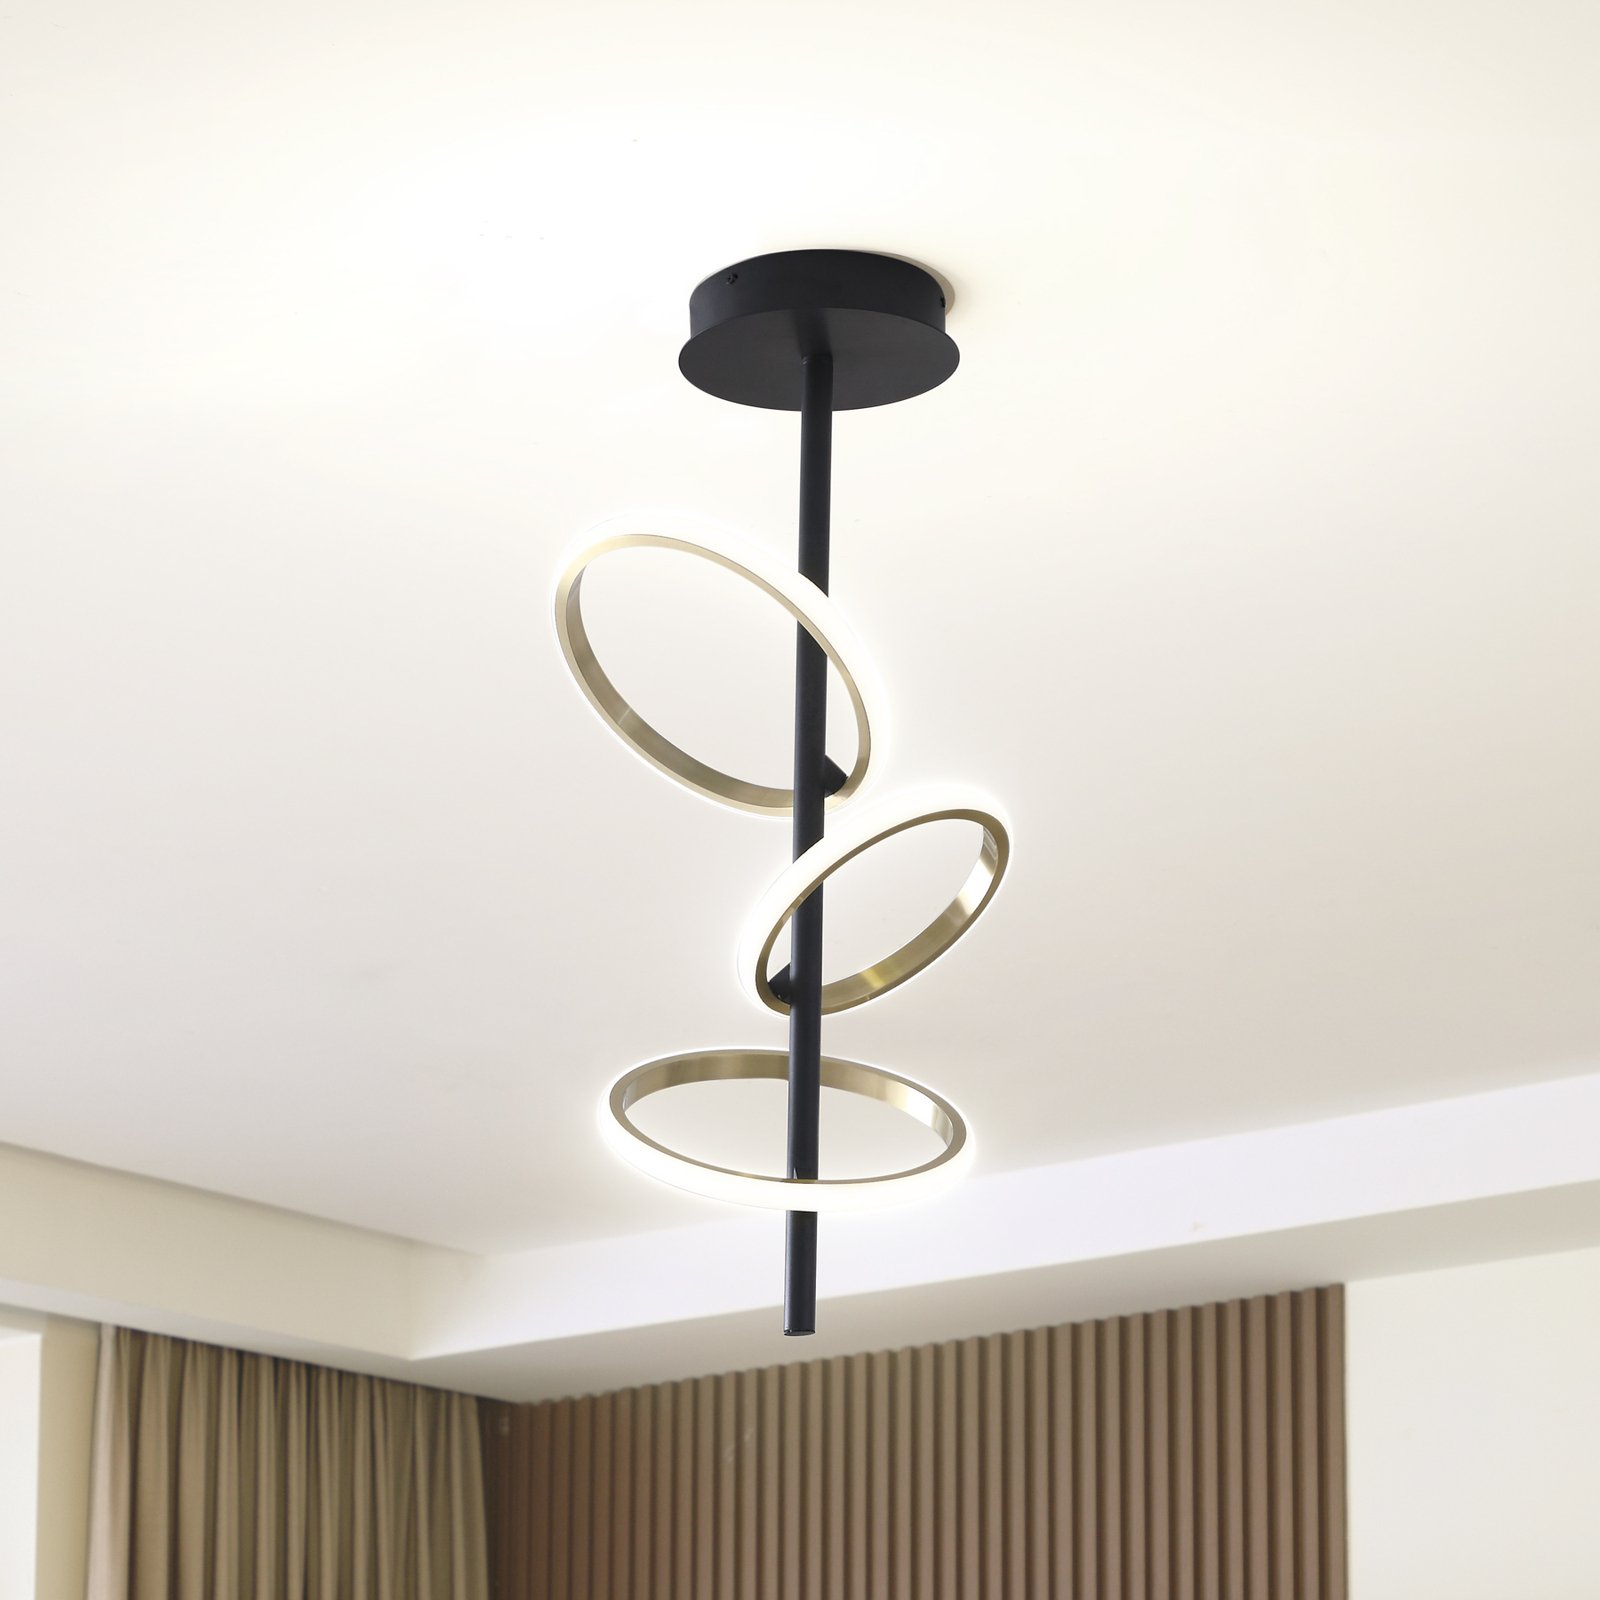 Lucande LED ceiling light Madu, black, metal, 75 cm high